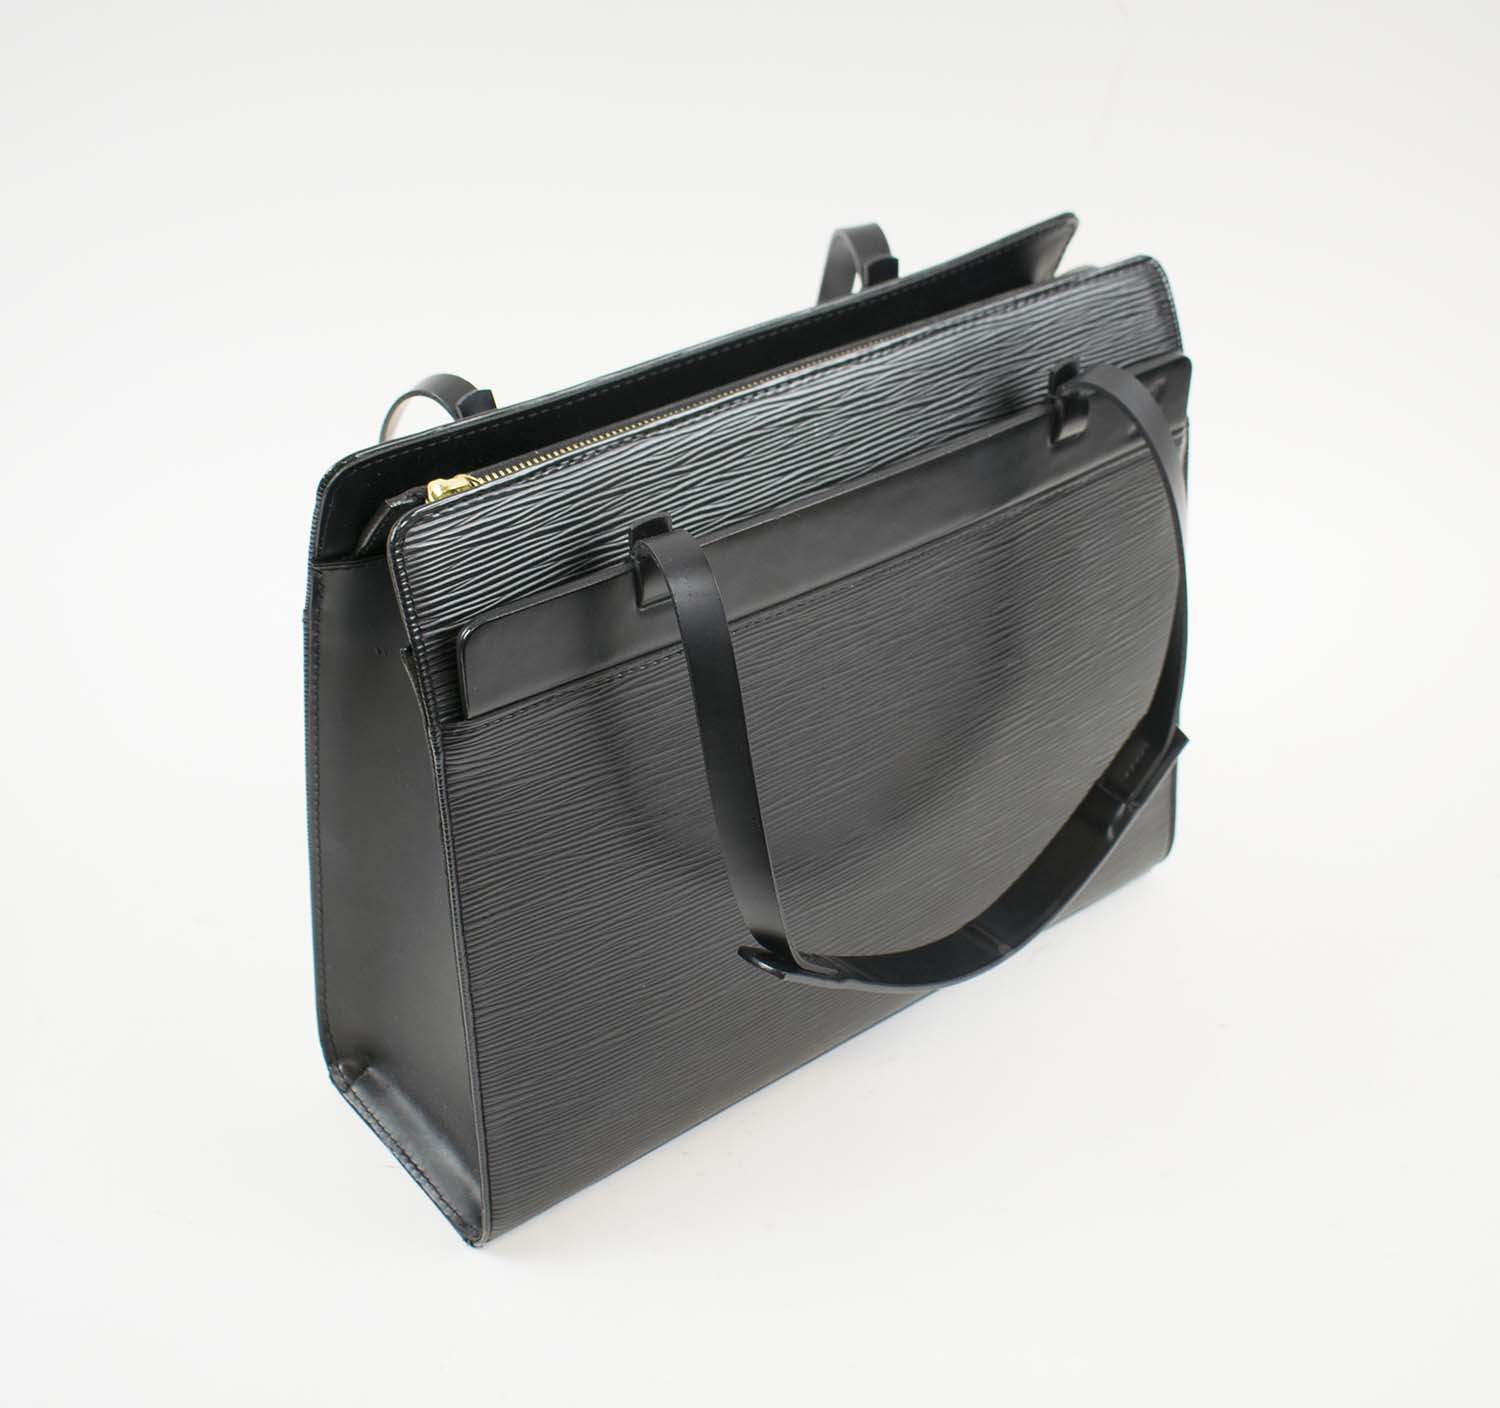 LOUIS VUITTON Black Epi Leather Croisette PM Tote Shoulder Bag